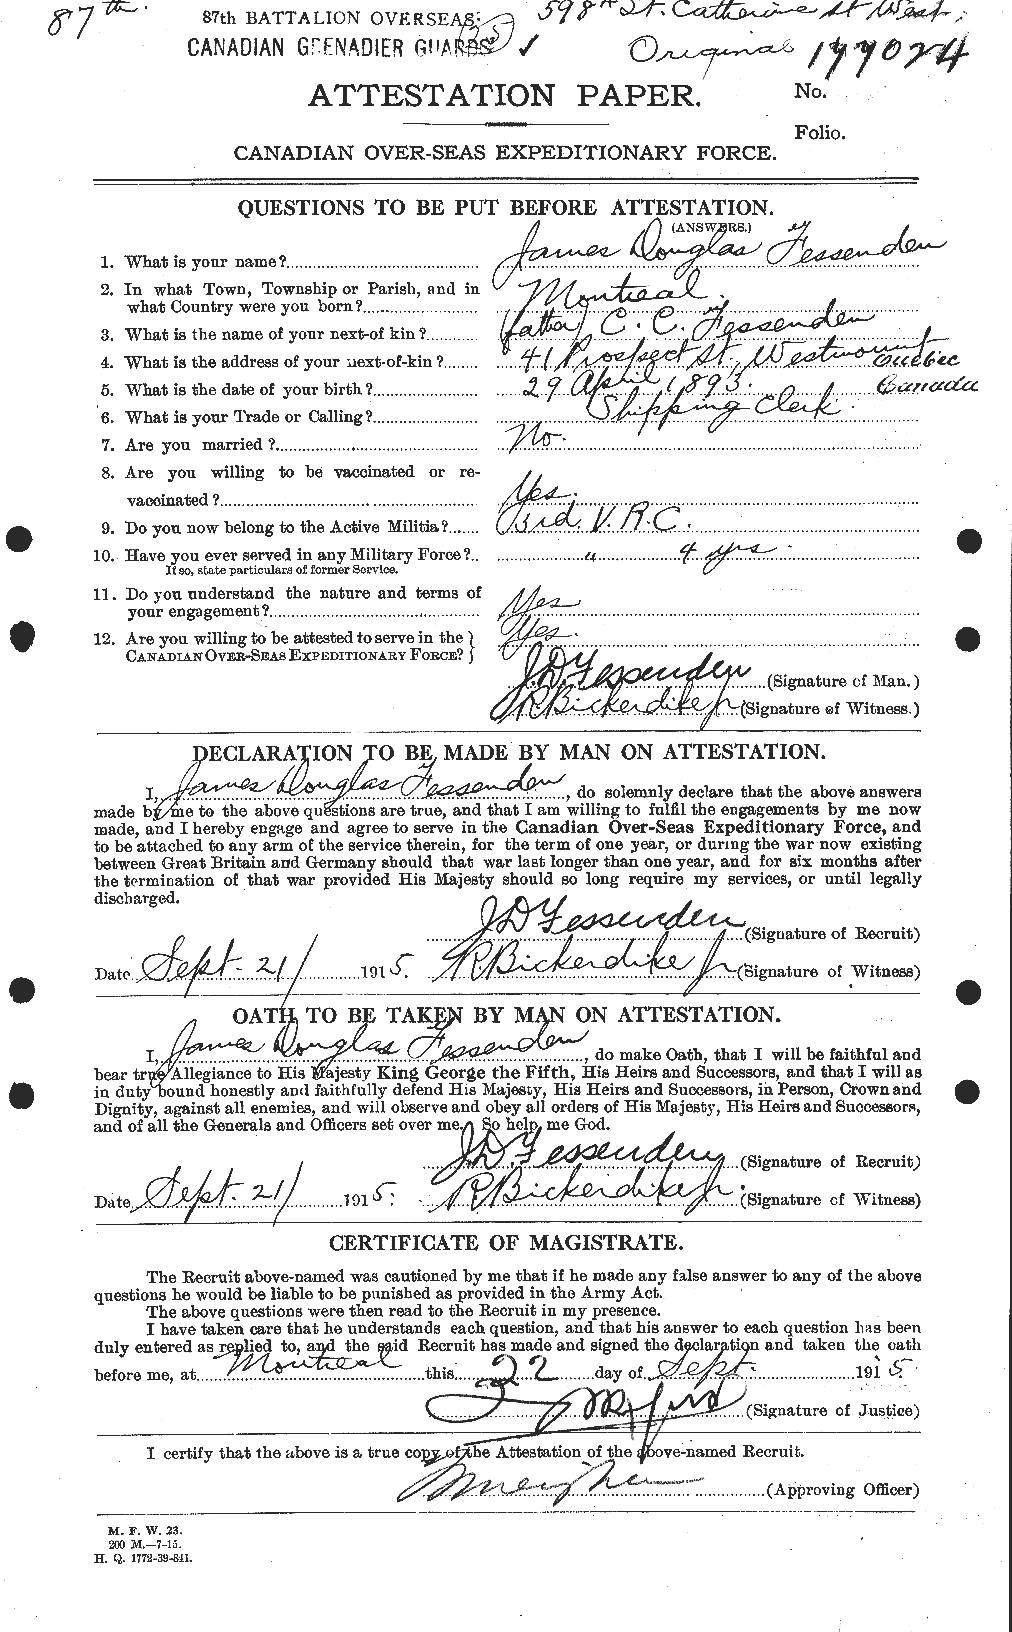 Dossiers du Personnel de la Première Guerre mondiale - CEC 325840a